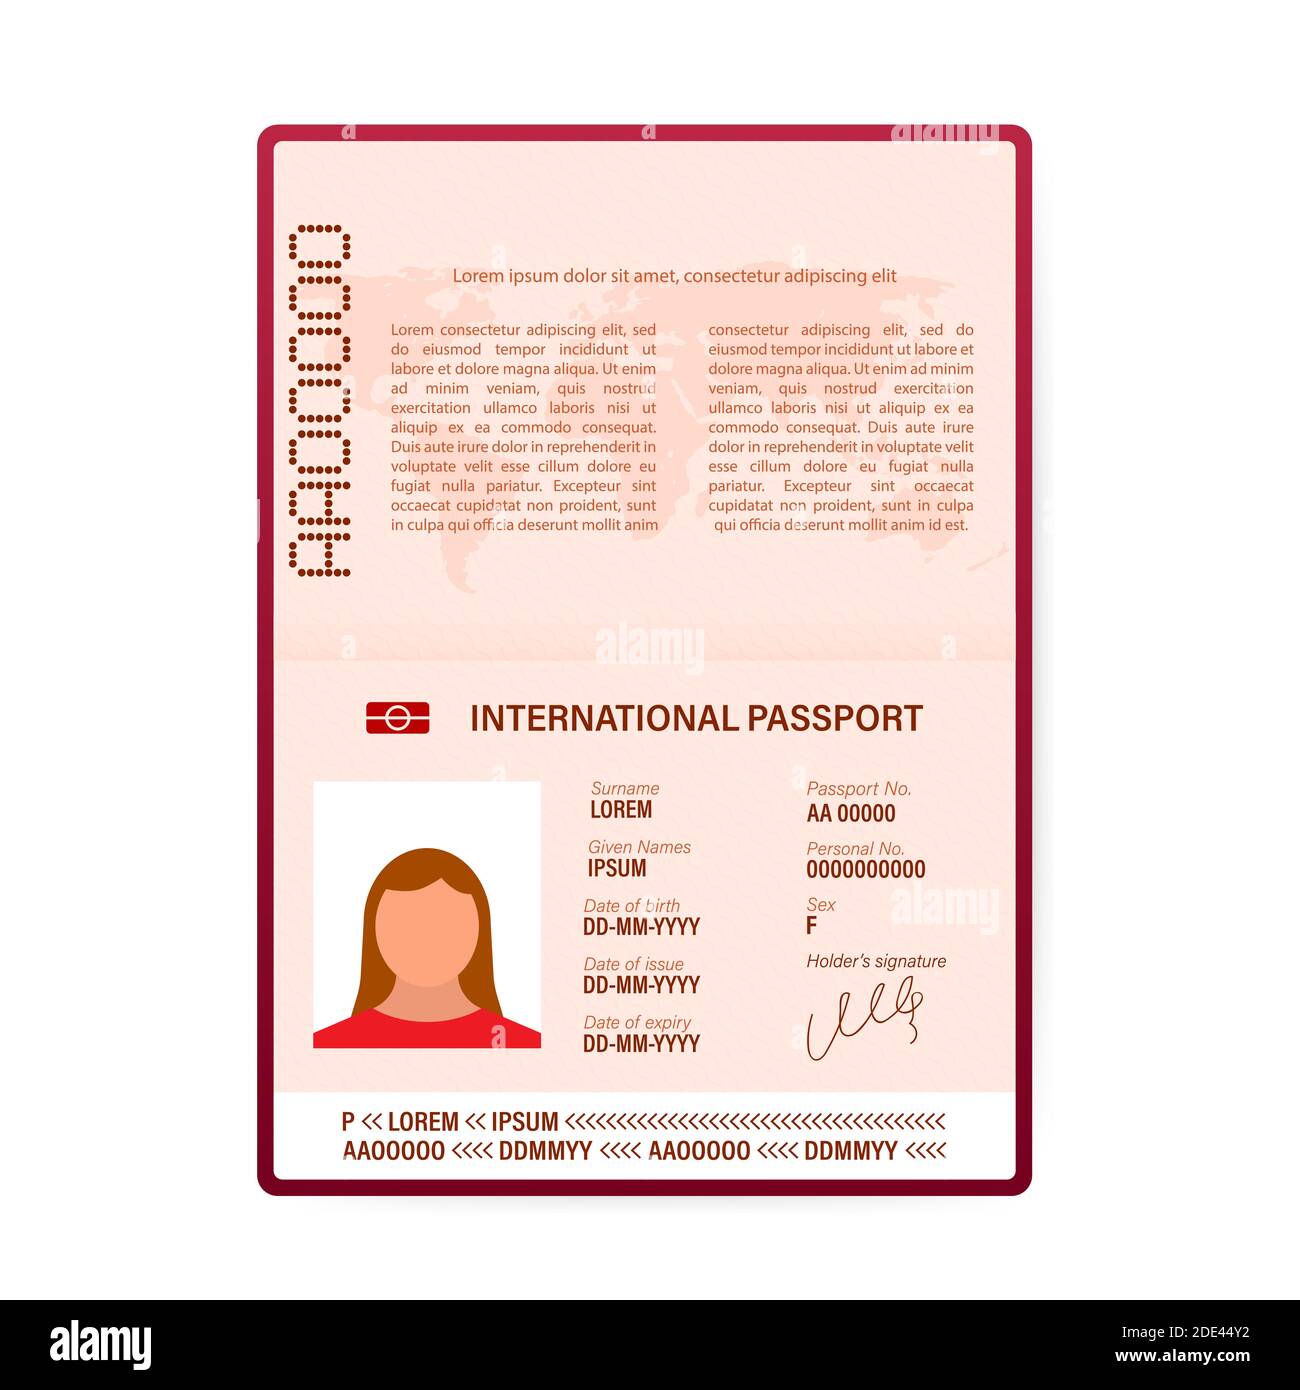 Diario di viaggio in formato passaporto da stampare (PDF) - Scuolainsoffitta